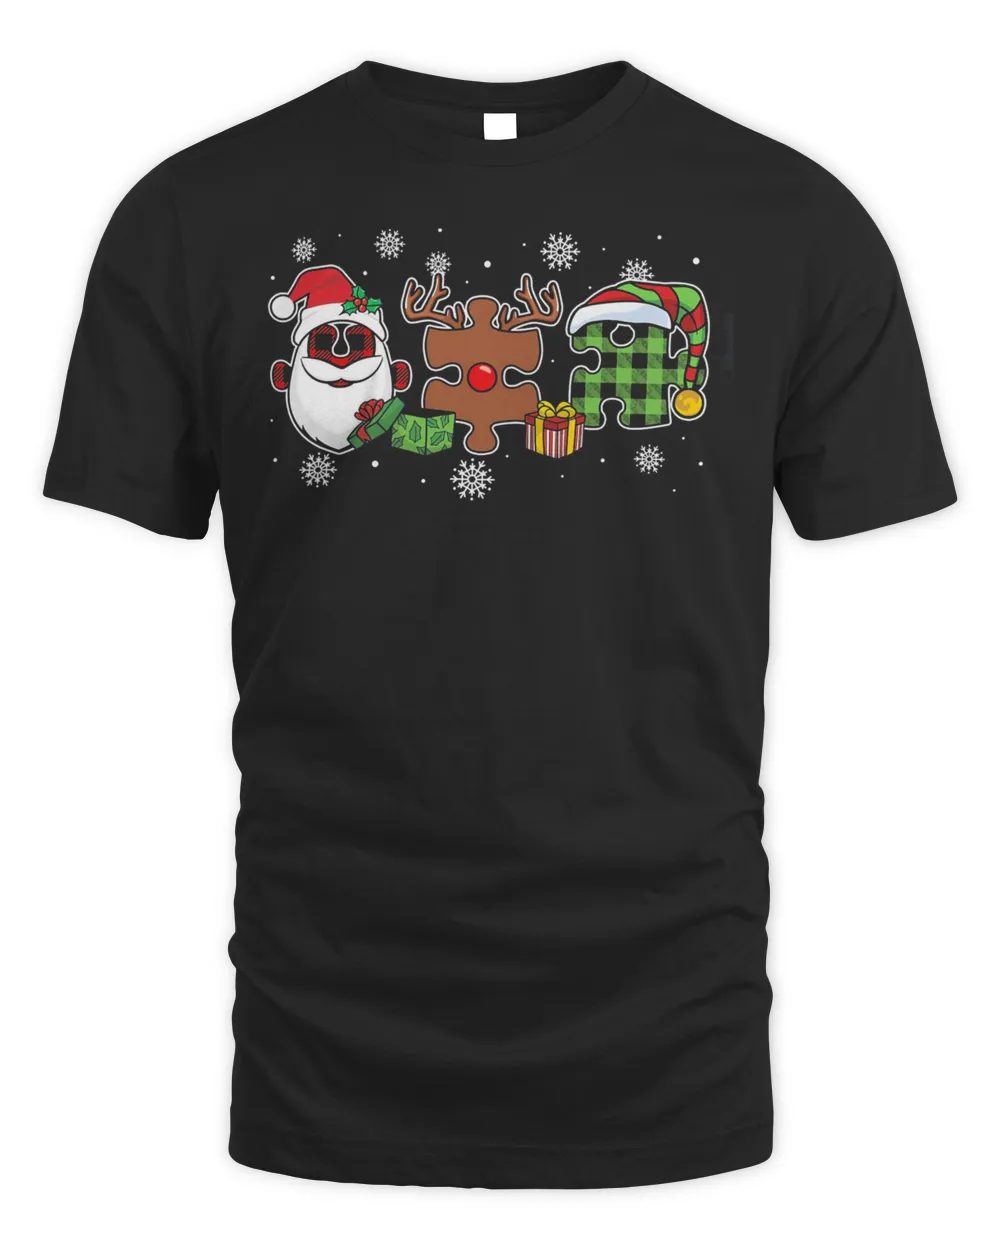 Santa Claus And Reindeer Autism Christmas Shirt